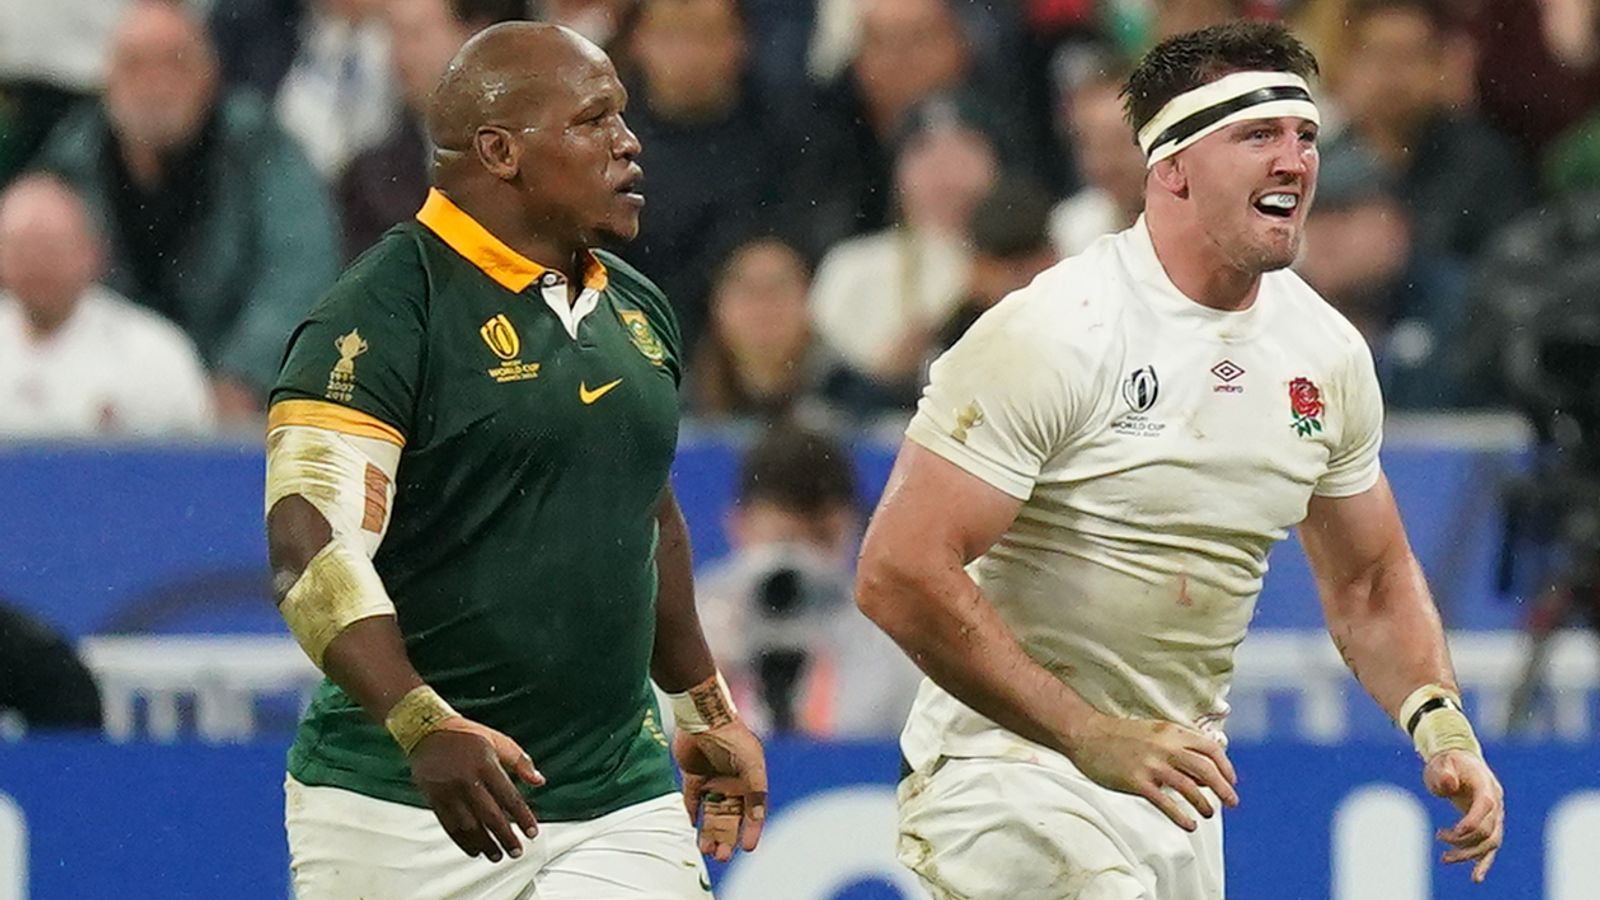 Bongi Mbonambi : World Rugby déclare « des preuves insuffisantes » pour inculper une pute sud-africaine pour insultes racistes présumées contre Tom Curry |  Actualités du rugby à XV